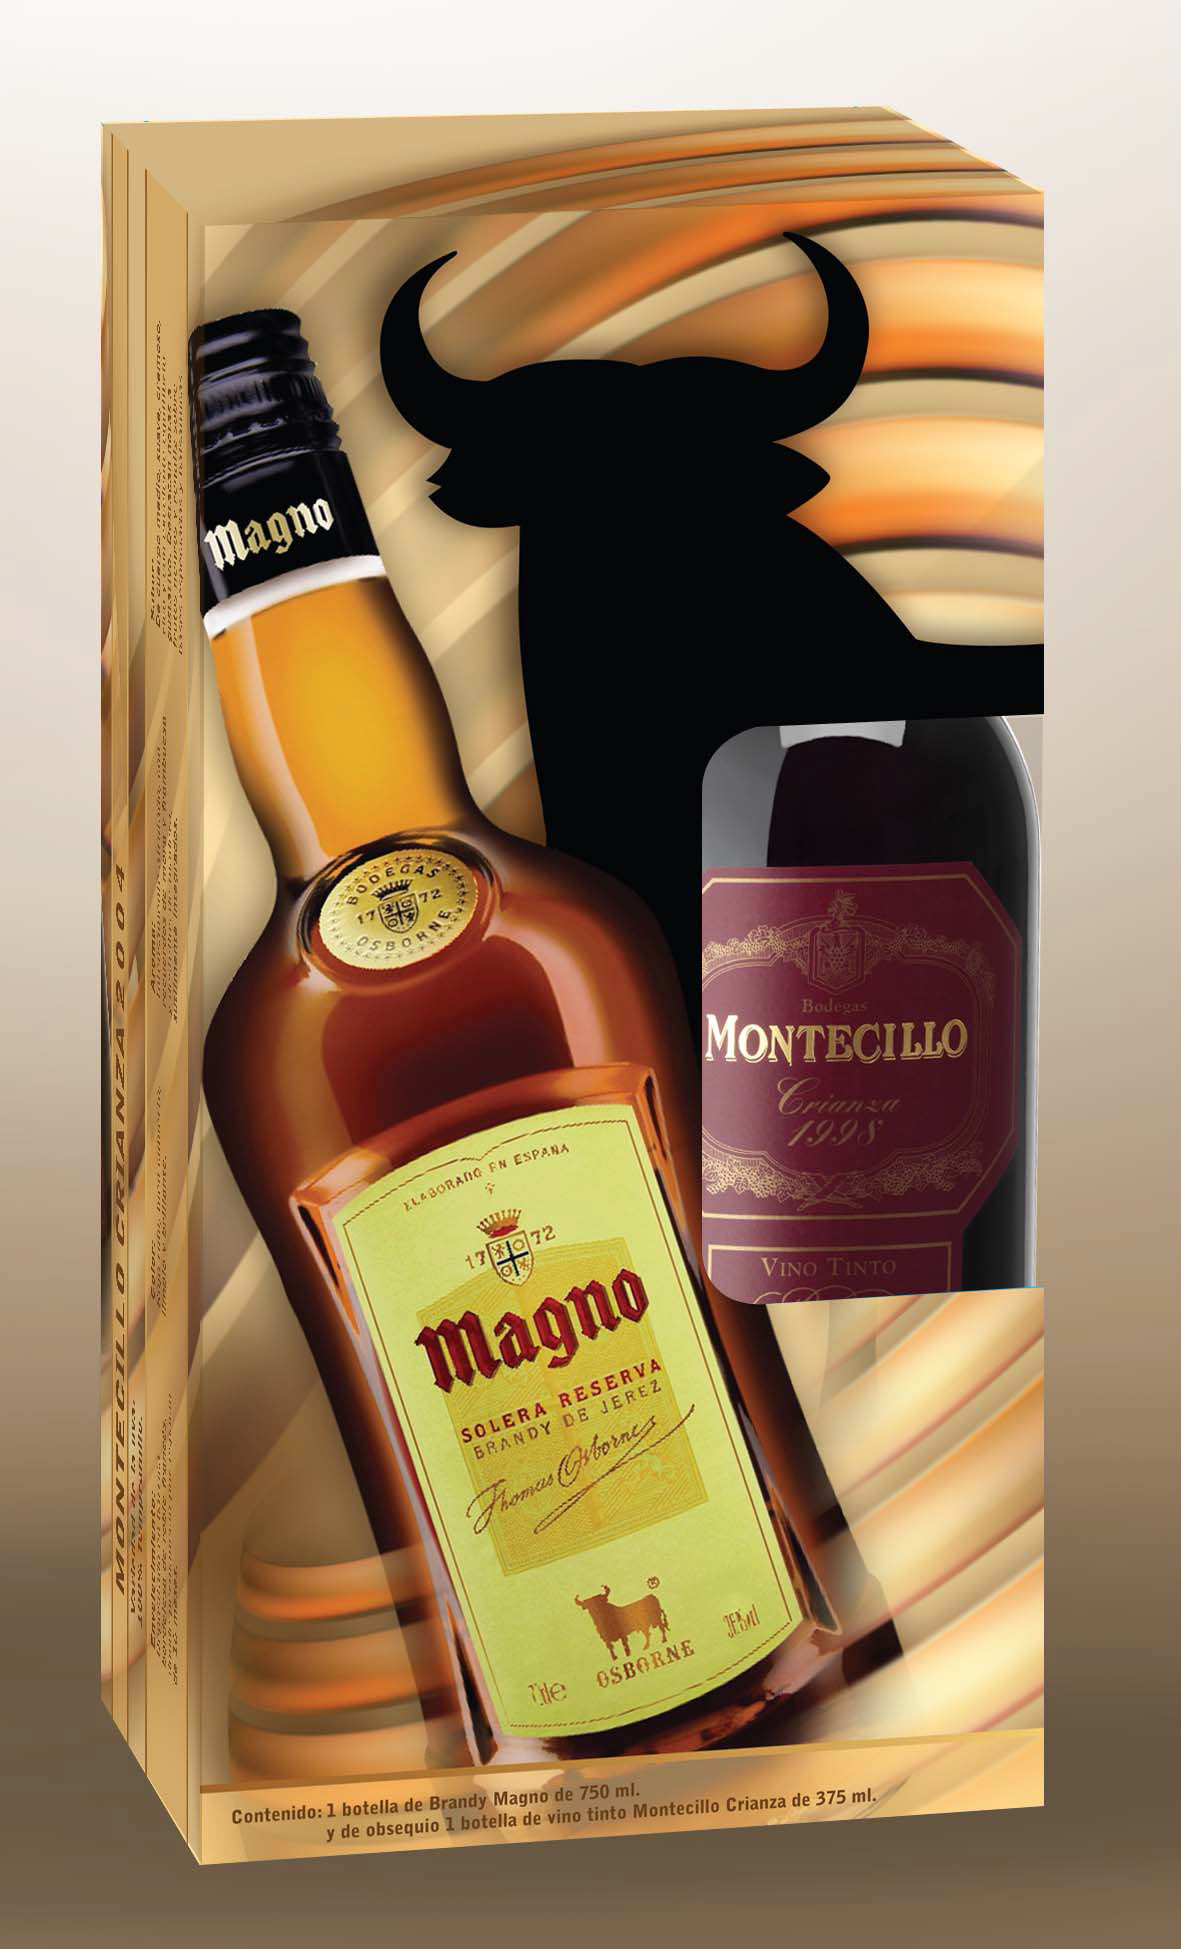 osborne empaque magno Montecillo Anis del mono publicidad Vinos